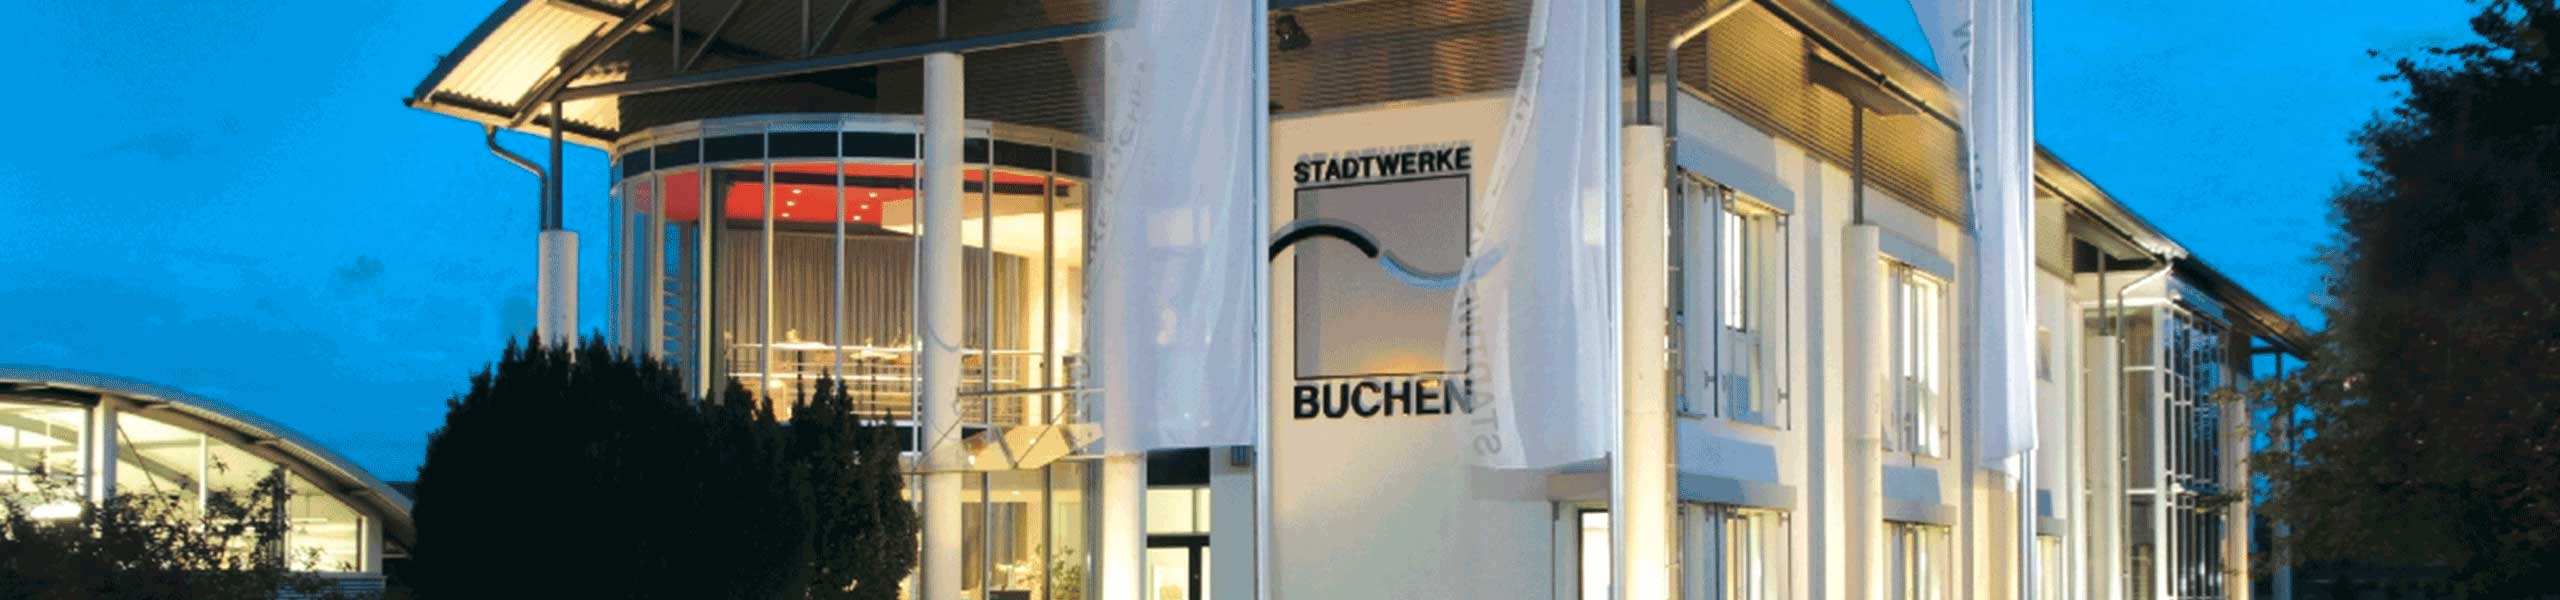 Stadtwerke Buchen GmbH & Co KG - Sachbearbeiter Technischer Innendienst (m/w/d)